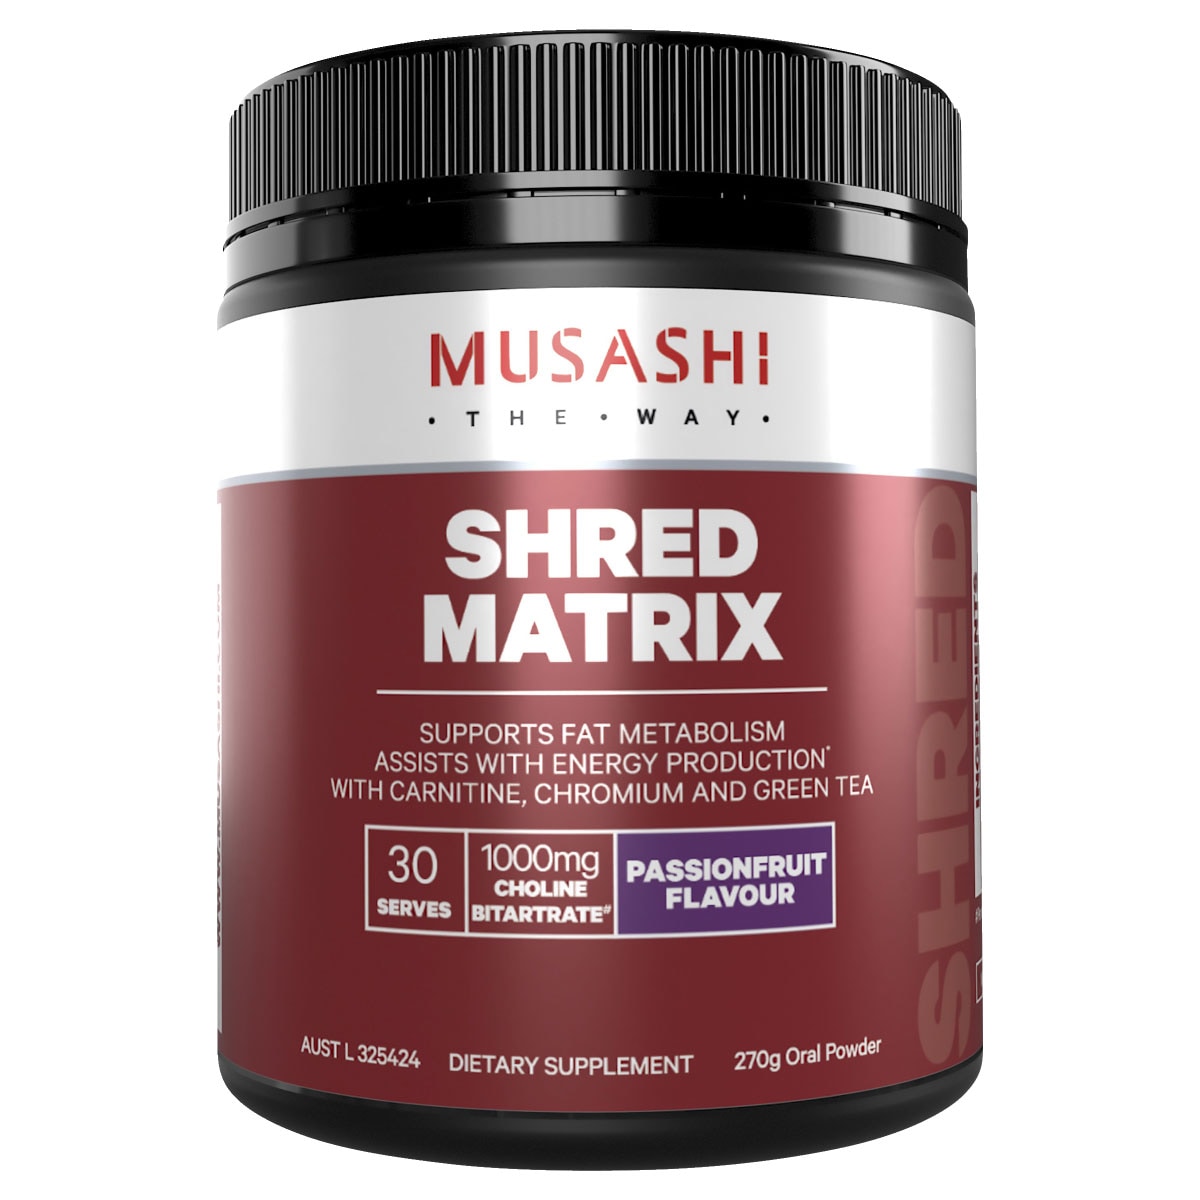 Musashi Shred Matrix Passionfruit 270g Australia